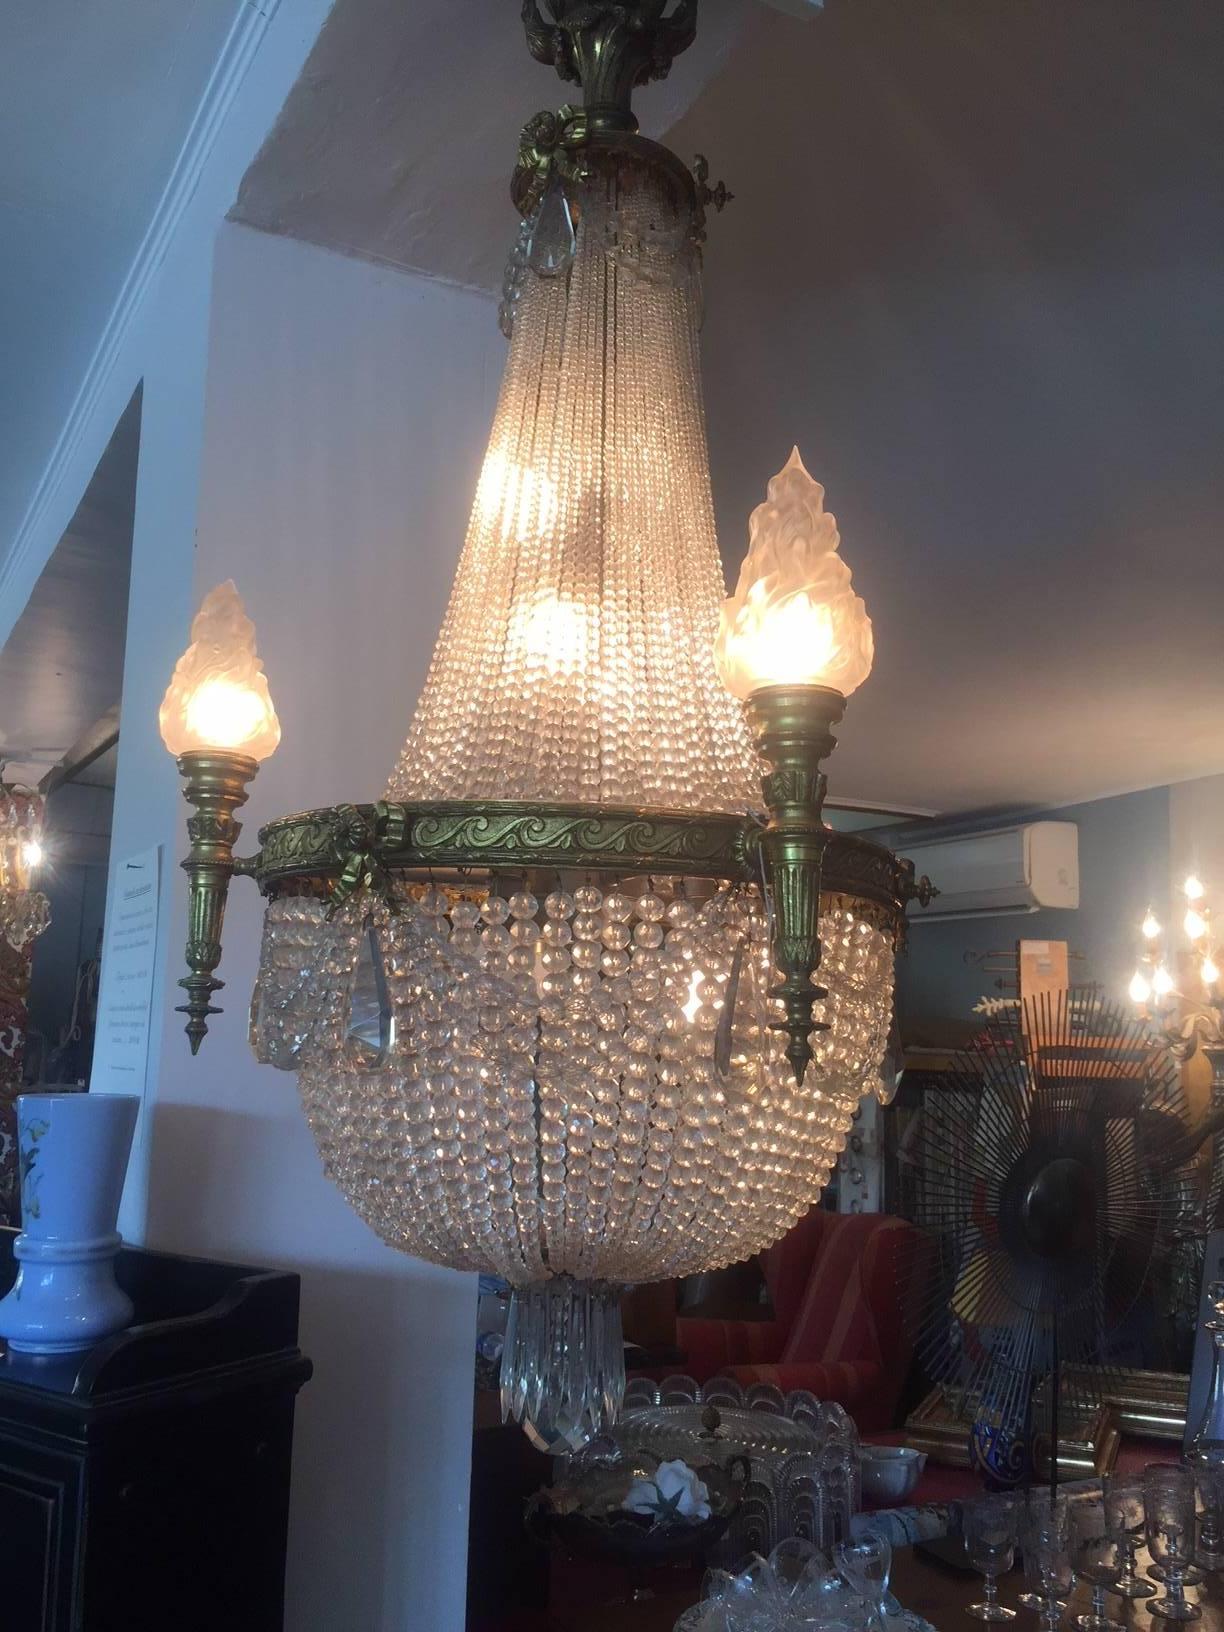 Lustre à ballons en bronze du 20e siècle avec pendentifs en cristal et verre.
Il y a quatre lampes torches à verres. La structure du lustre est faite de beaux éléments sculptés en bronze. Il s'agit d'un lustre très élégant qui pourrait être idéal